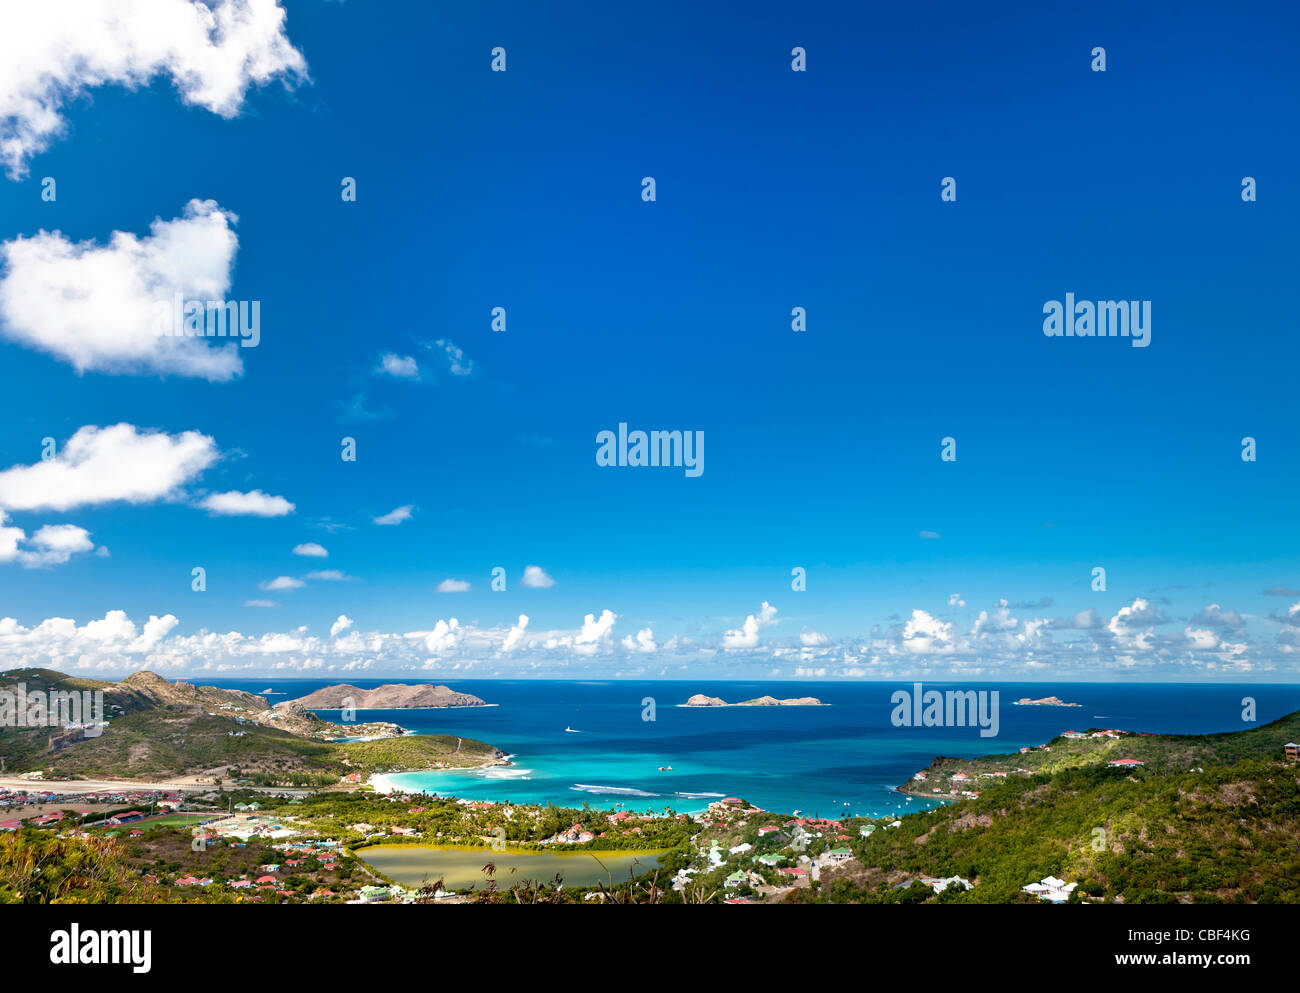 St Barthelemy, une île des Antilles françaises. Au cours des dernières années, l'île est devenue un terrain de jeu des riches. Banque D'Images